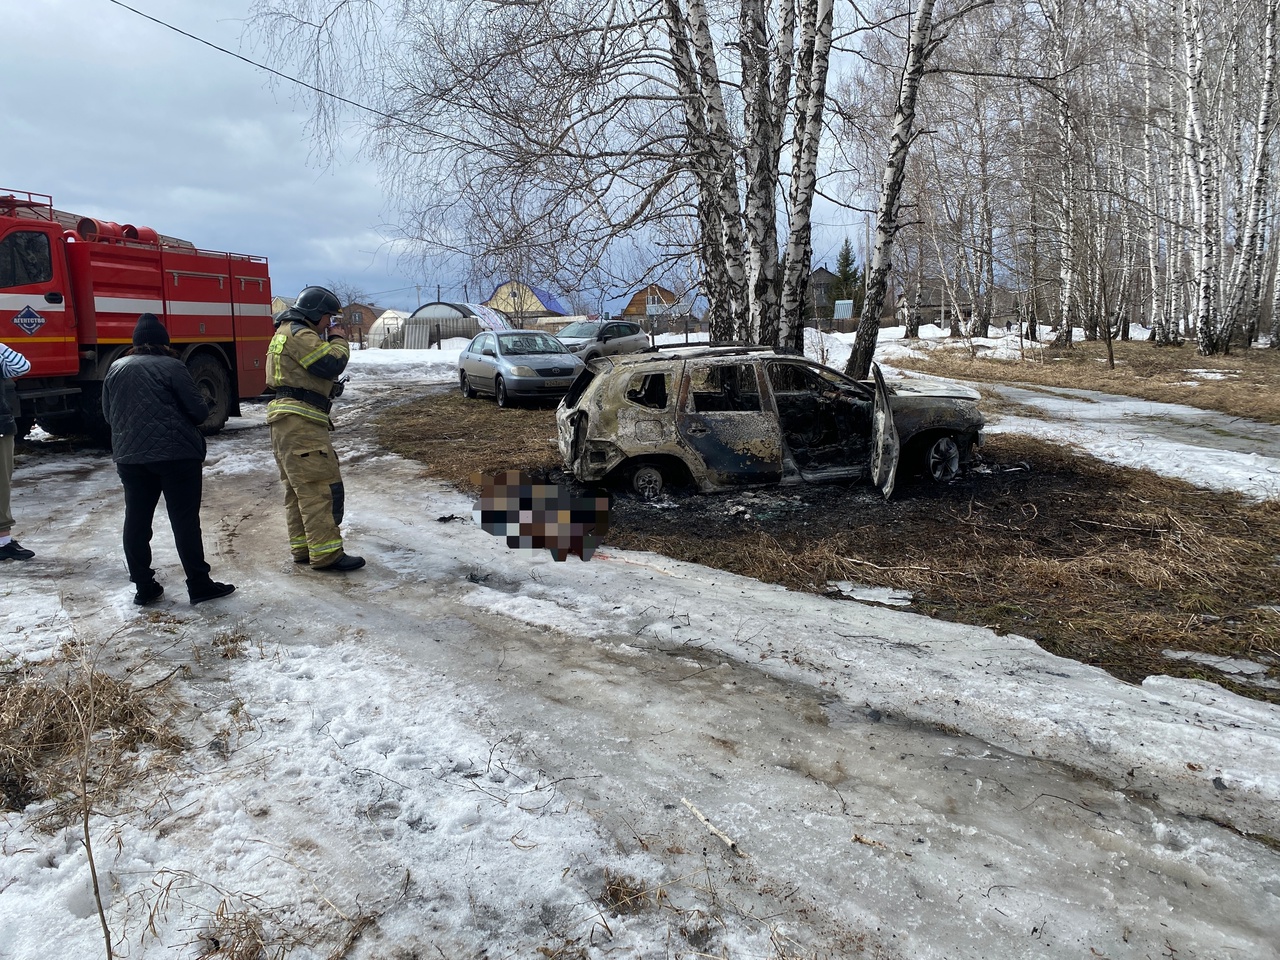 В Кузбассе человек сгорел в автомобиле возле кладбища